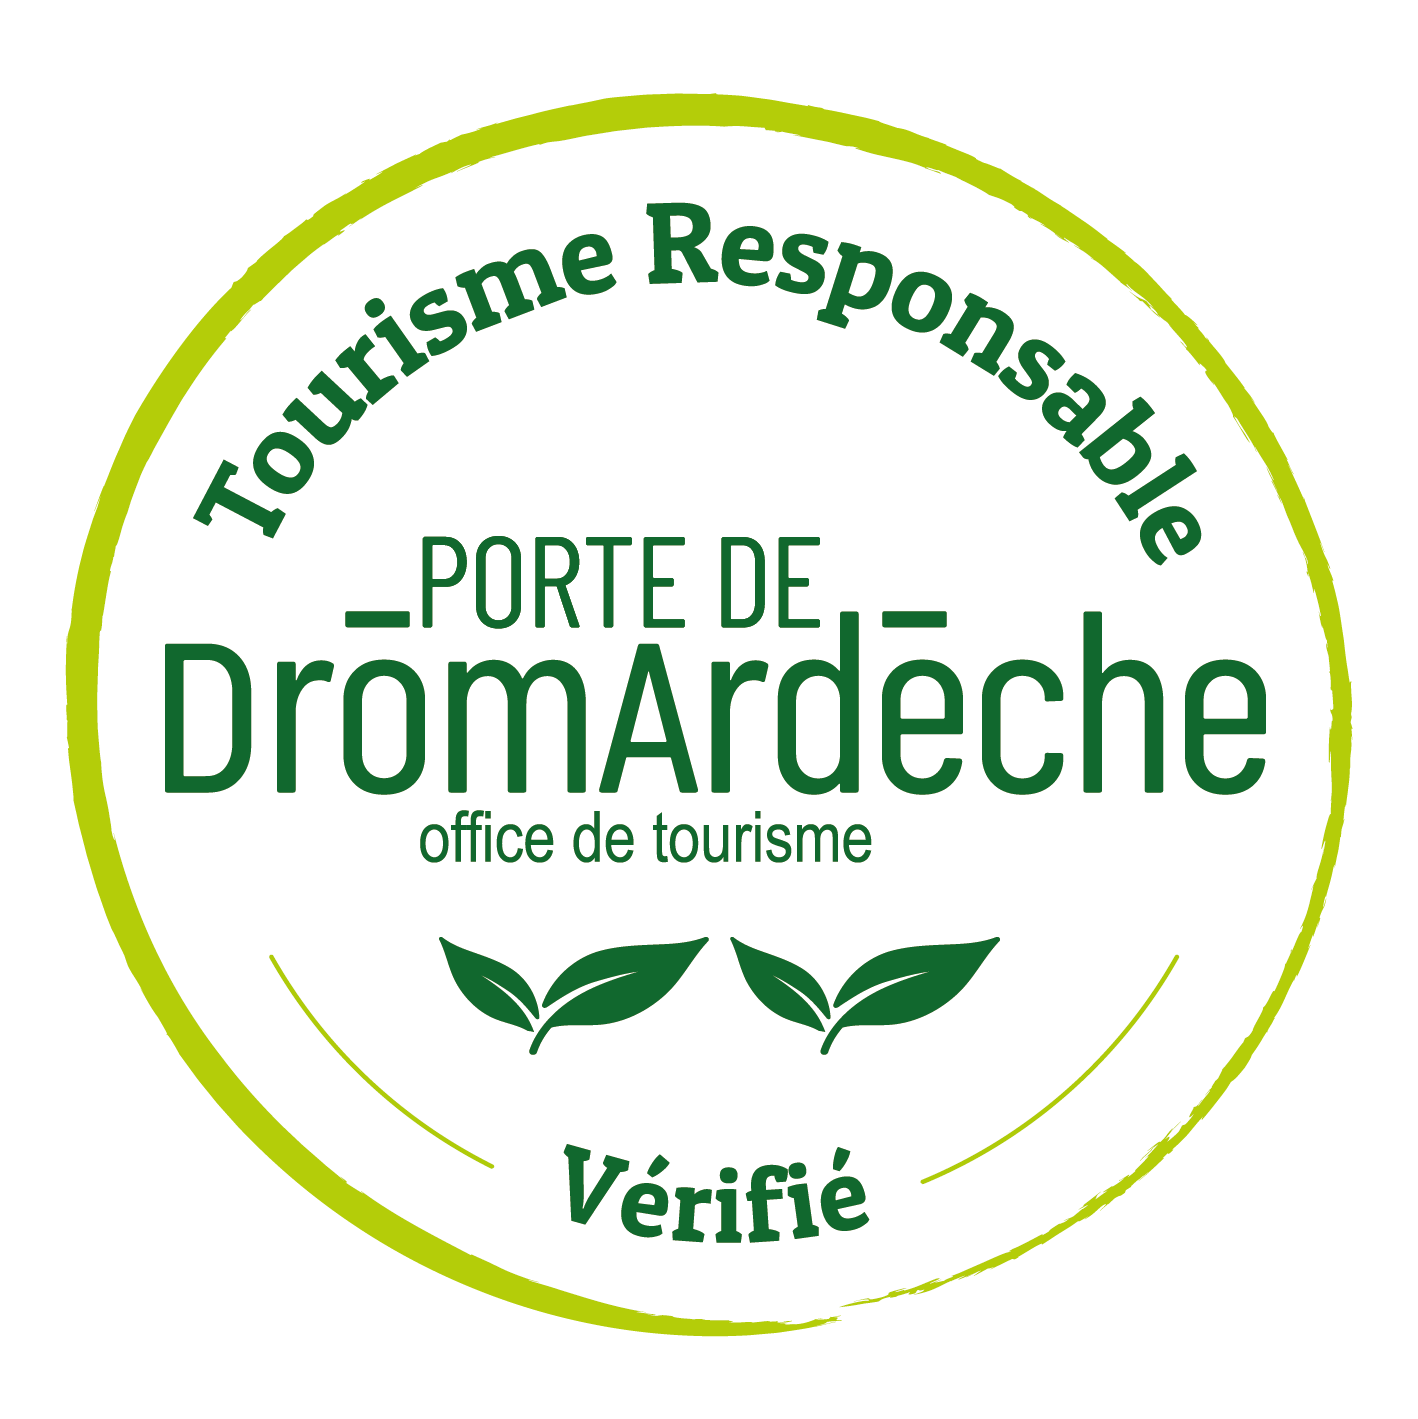 2024-Logo-Label-Tourisme-Responsable-OT-PortedeDromardeche-vérifié-VF-2 Feuilles_Plan de travail 1 copie(2)